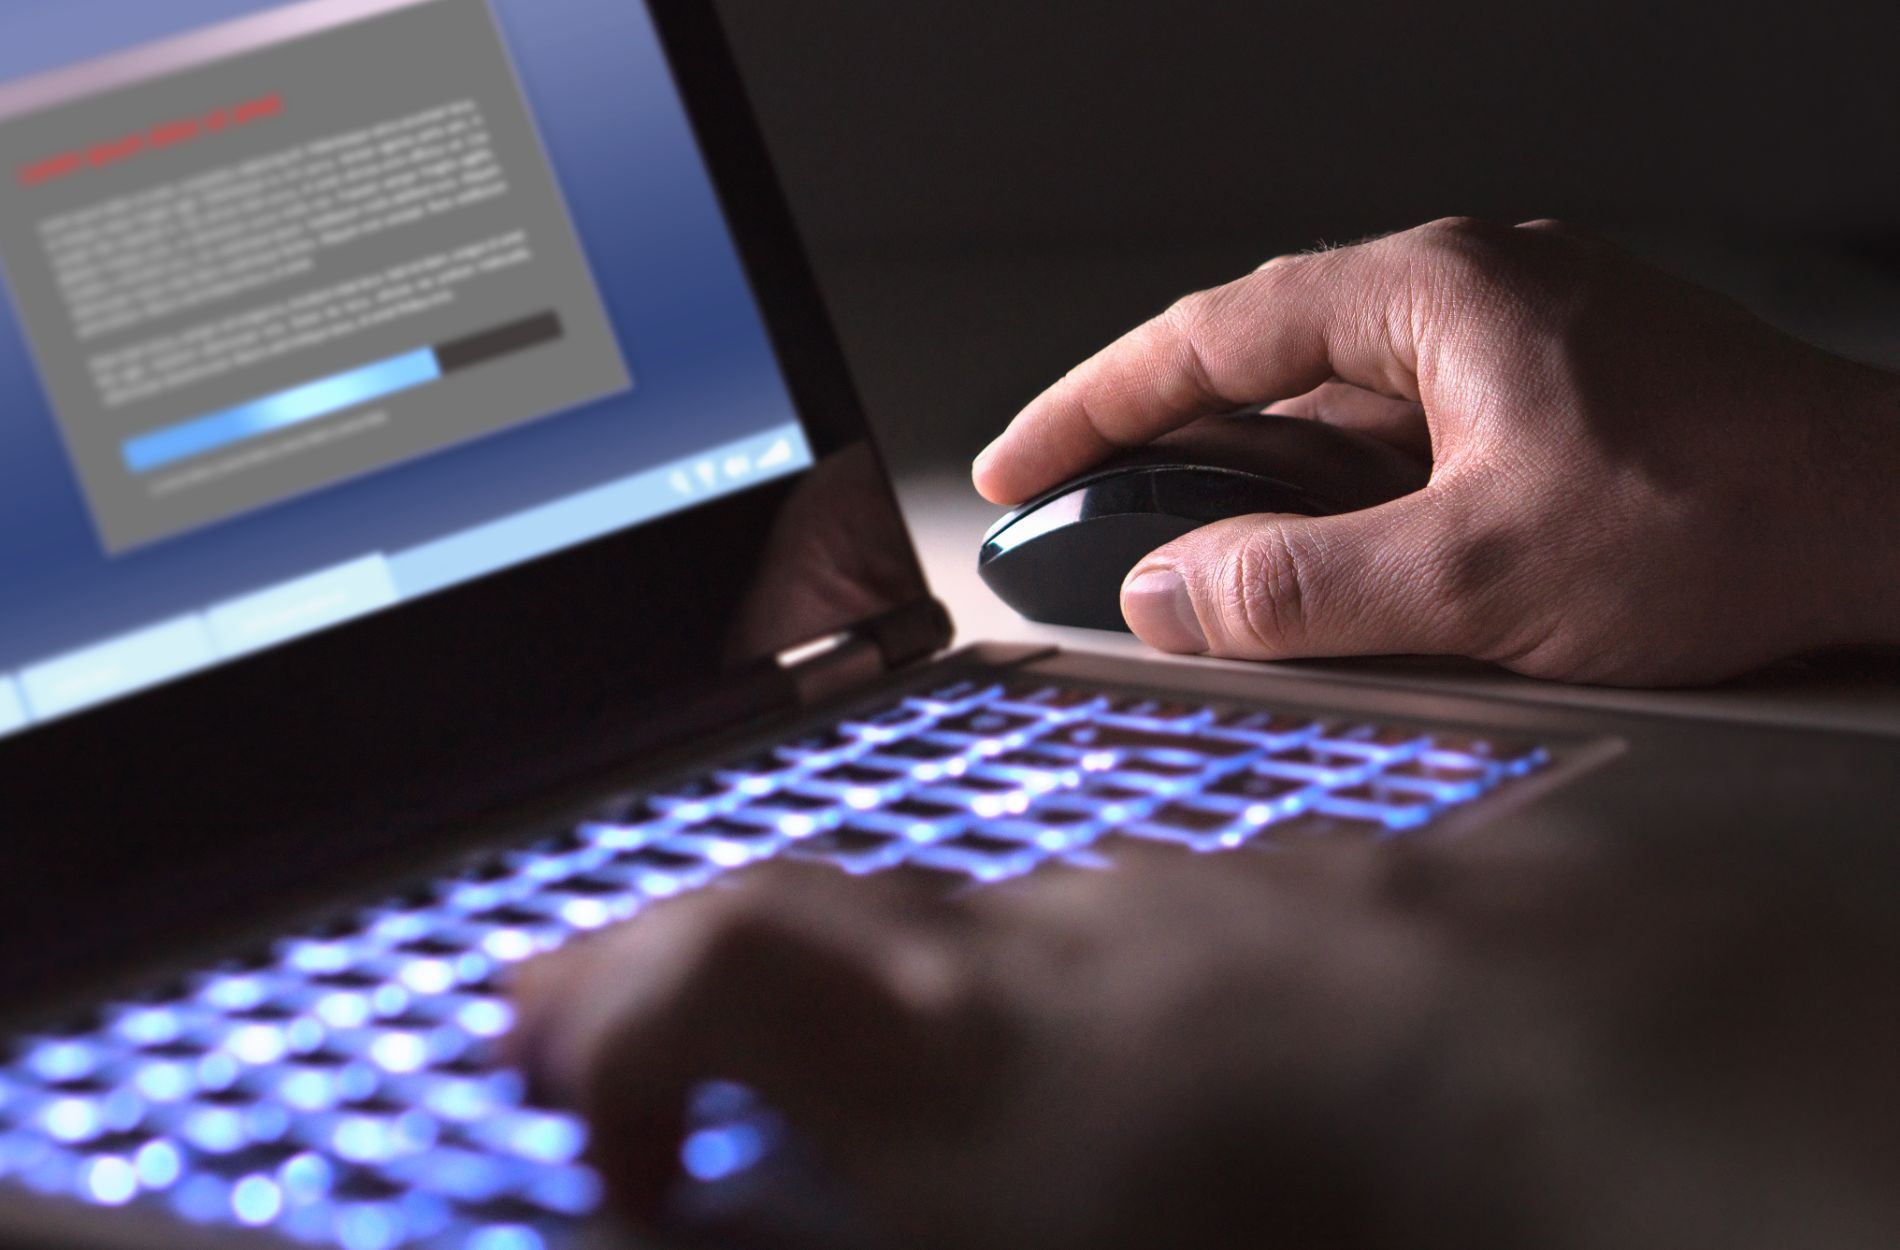 Man on laptop with keyboard illuminated